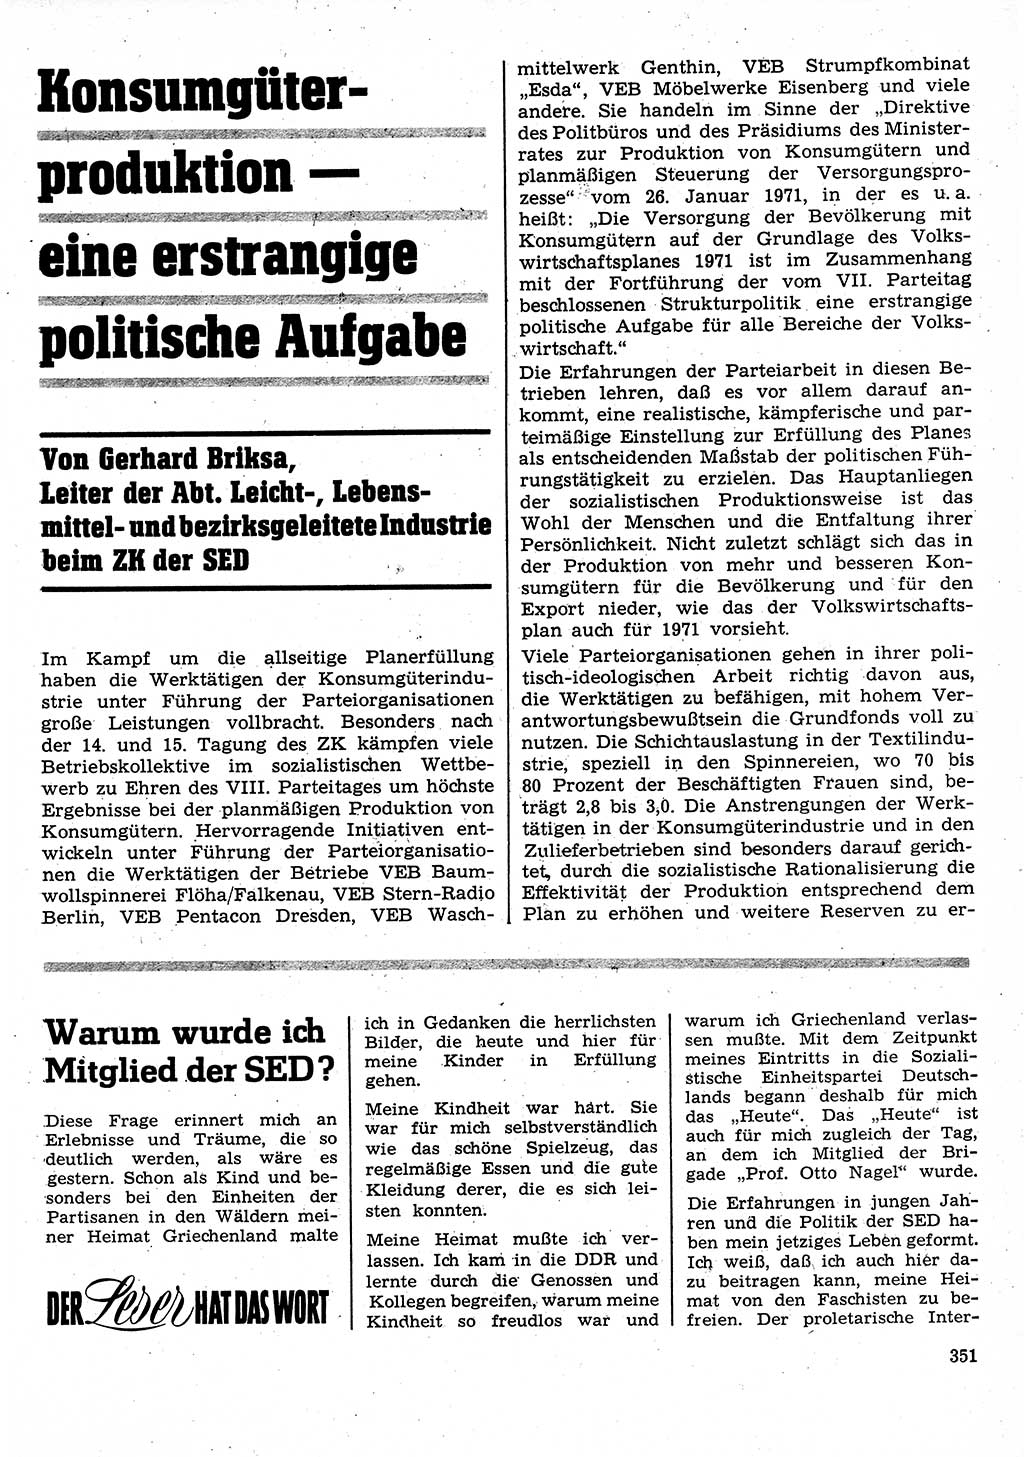 Neuer Weg (NW), Organ des Zentralkomitees (ZK) der SED (Sozialistische Einheitspartei Deutschlands) für Fragen des Parteilebens, 26. Jahrgang [Deutsche Demokratische Republik (DDR)] 1971, Seite 351 (NW ZK SED DDR 1971, S. 351)